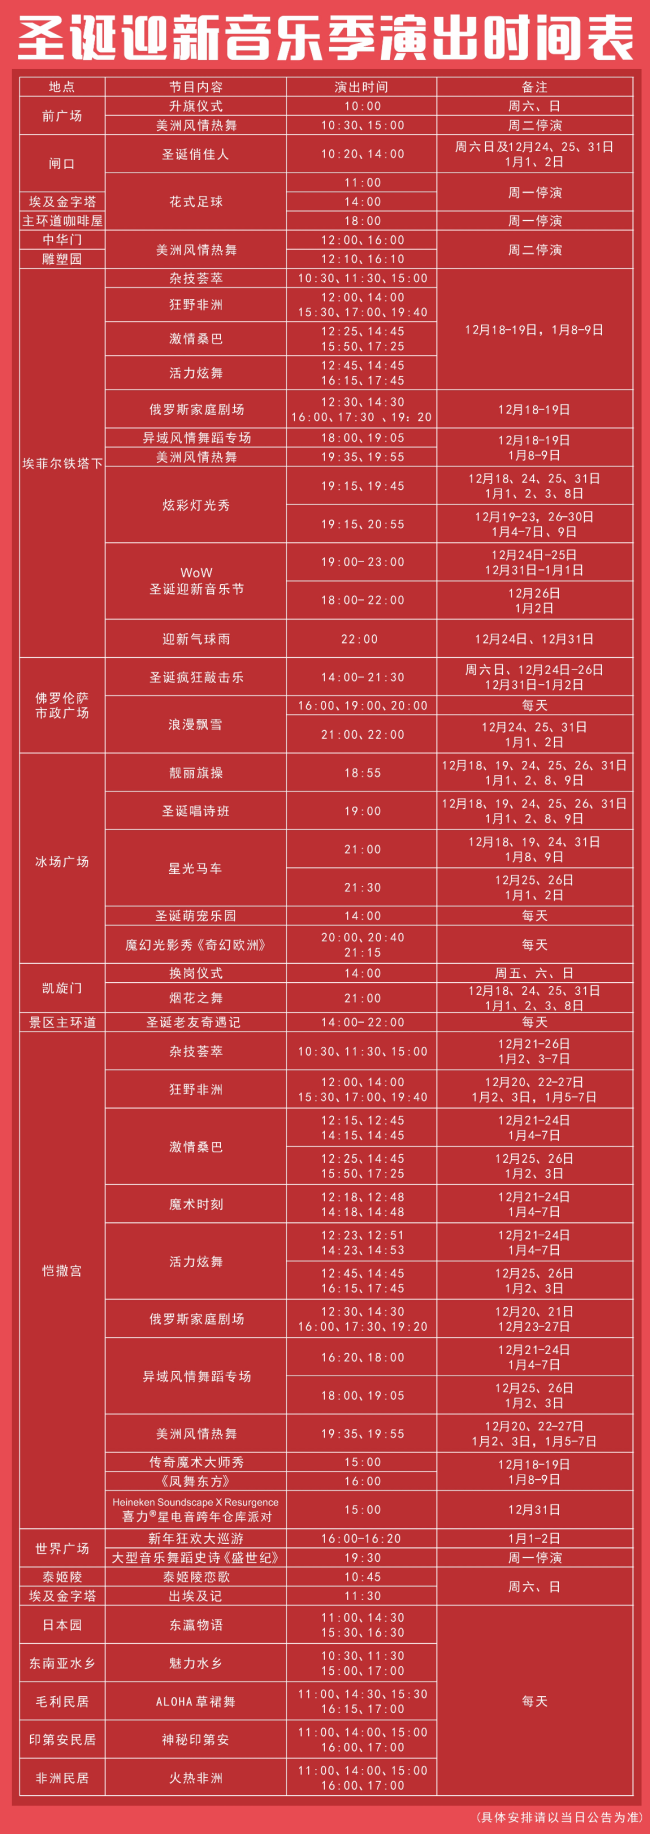 2022深圳世界之窗元旦活动表演时间表